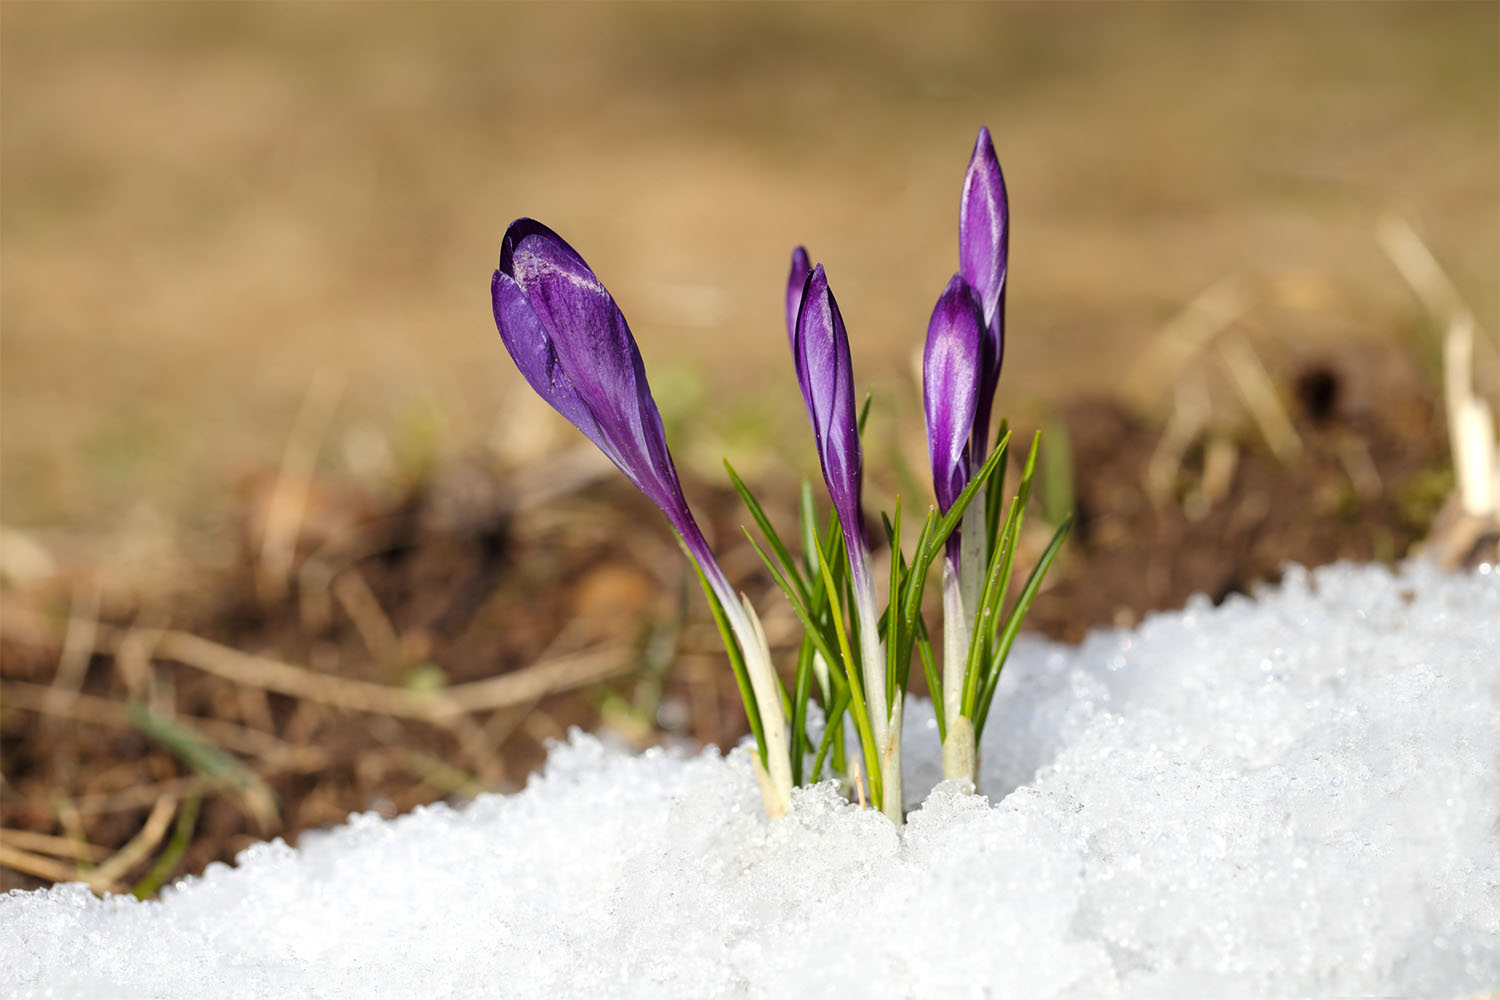 Frühlings-Specials im Gambswirt – wenn die letzten Wintertage gezählt sind und die Natur zu neuem Leben erwacht